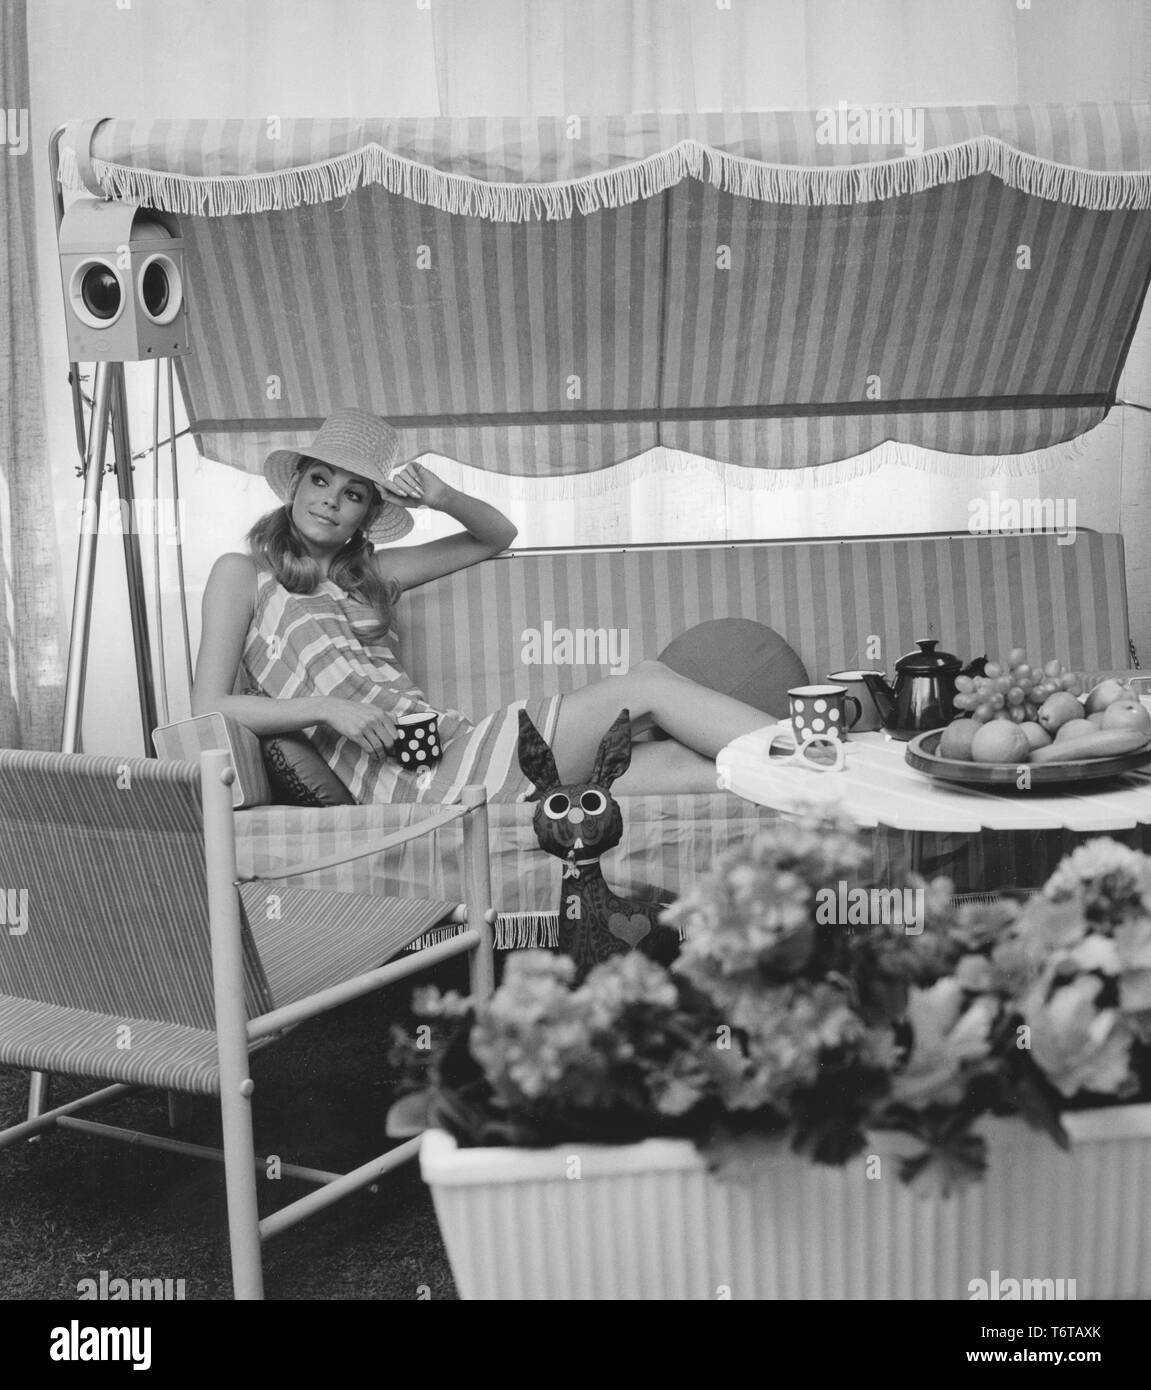 Sommer der 60er Jahre. Eine junge Frau sitzt in einer Hängematte comforably trinken Kaffee. Das Design der Möbel und ihr Kleid stellt die 1960er Dekade sehr gut. Schweden 1960 Stockfoto